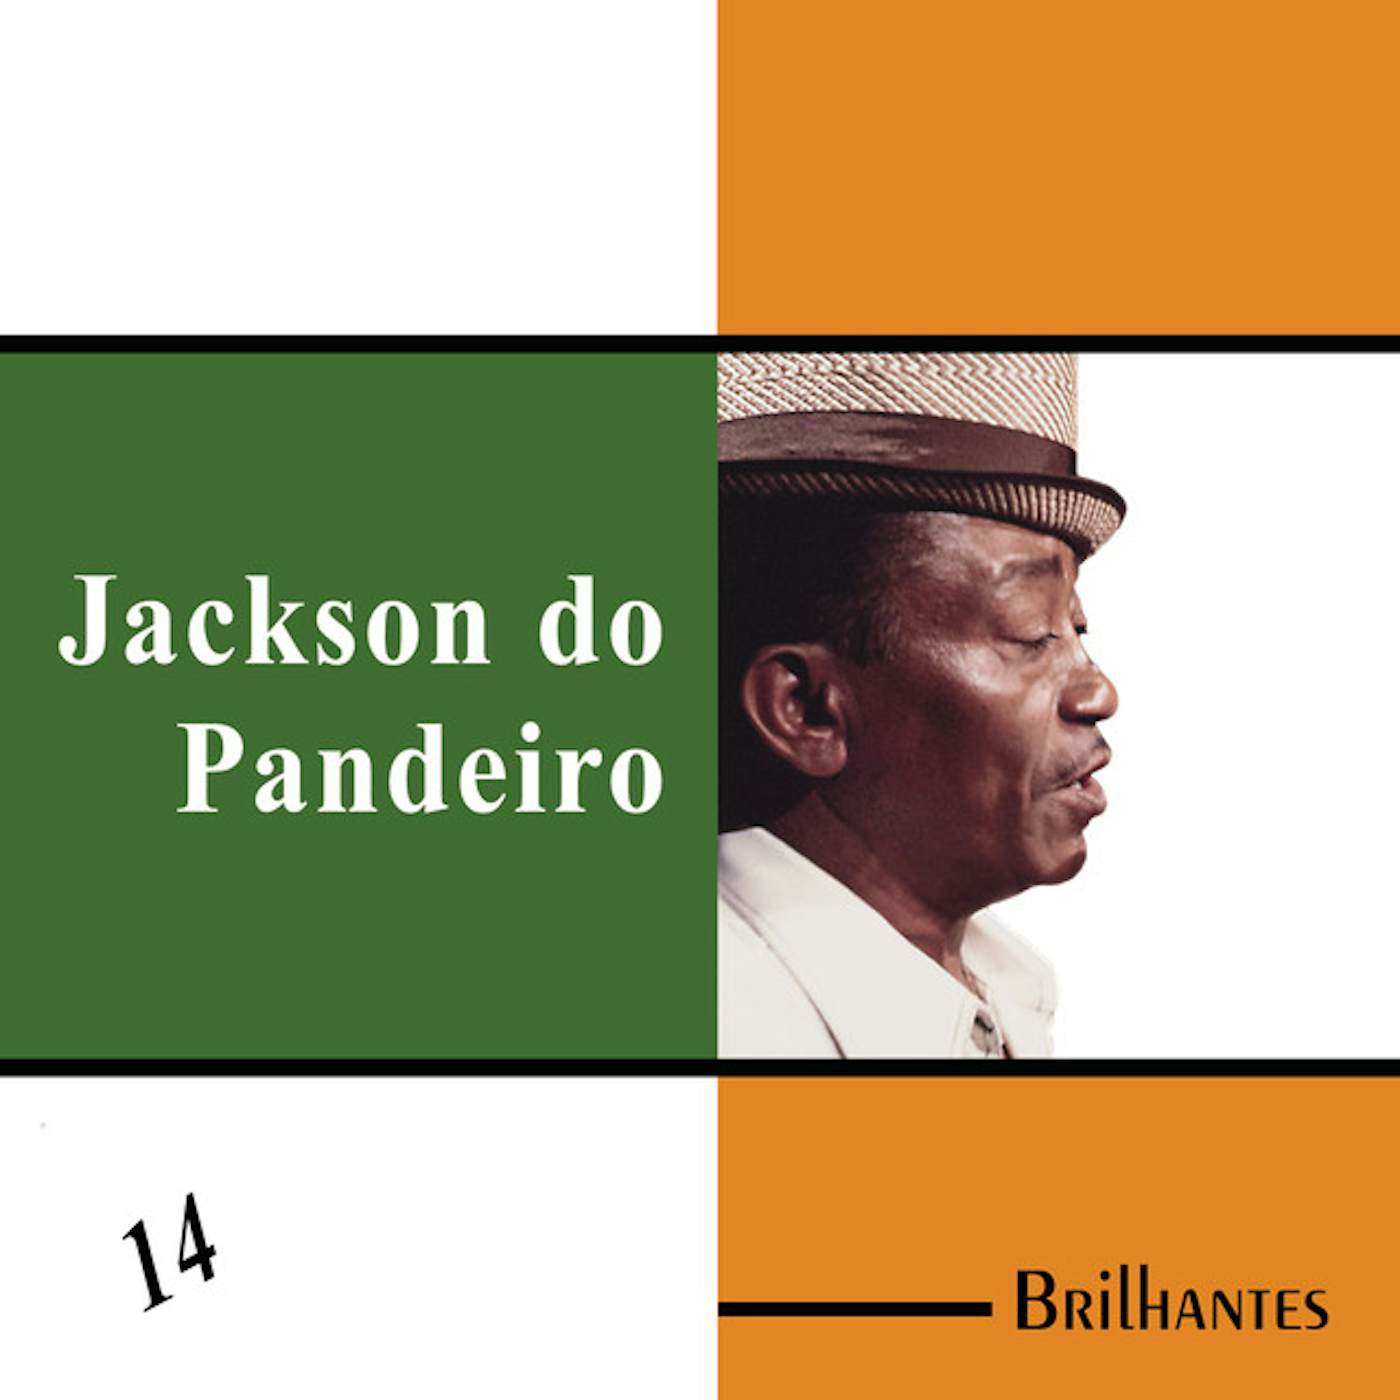 Jackson Do Pandeiro Vinyl Record